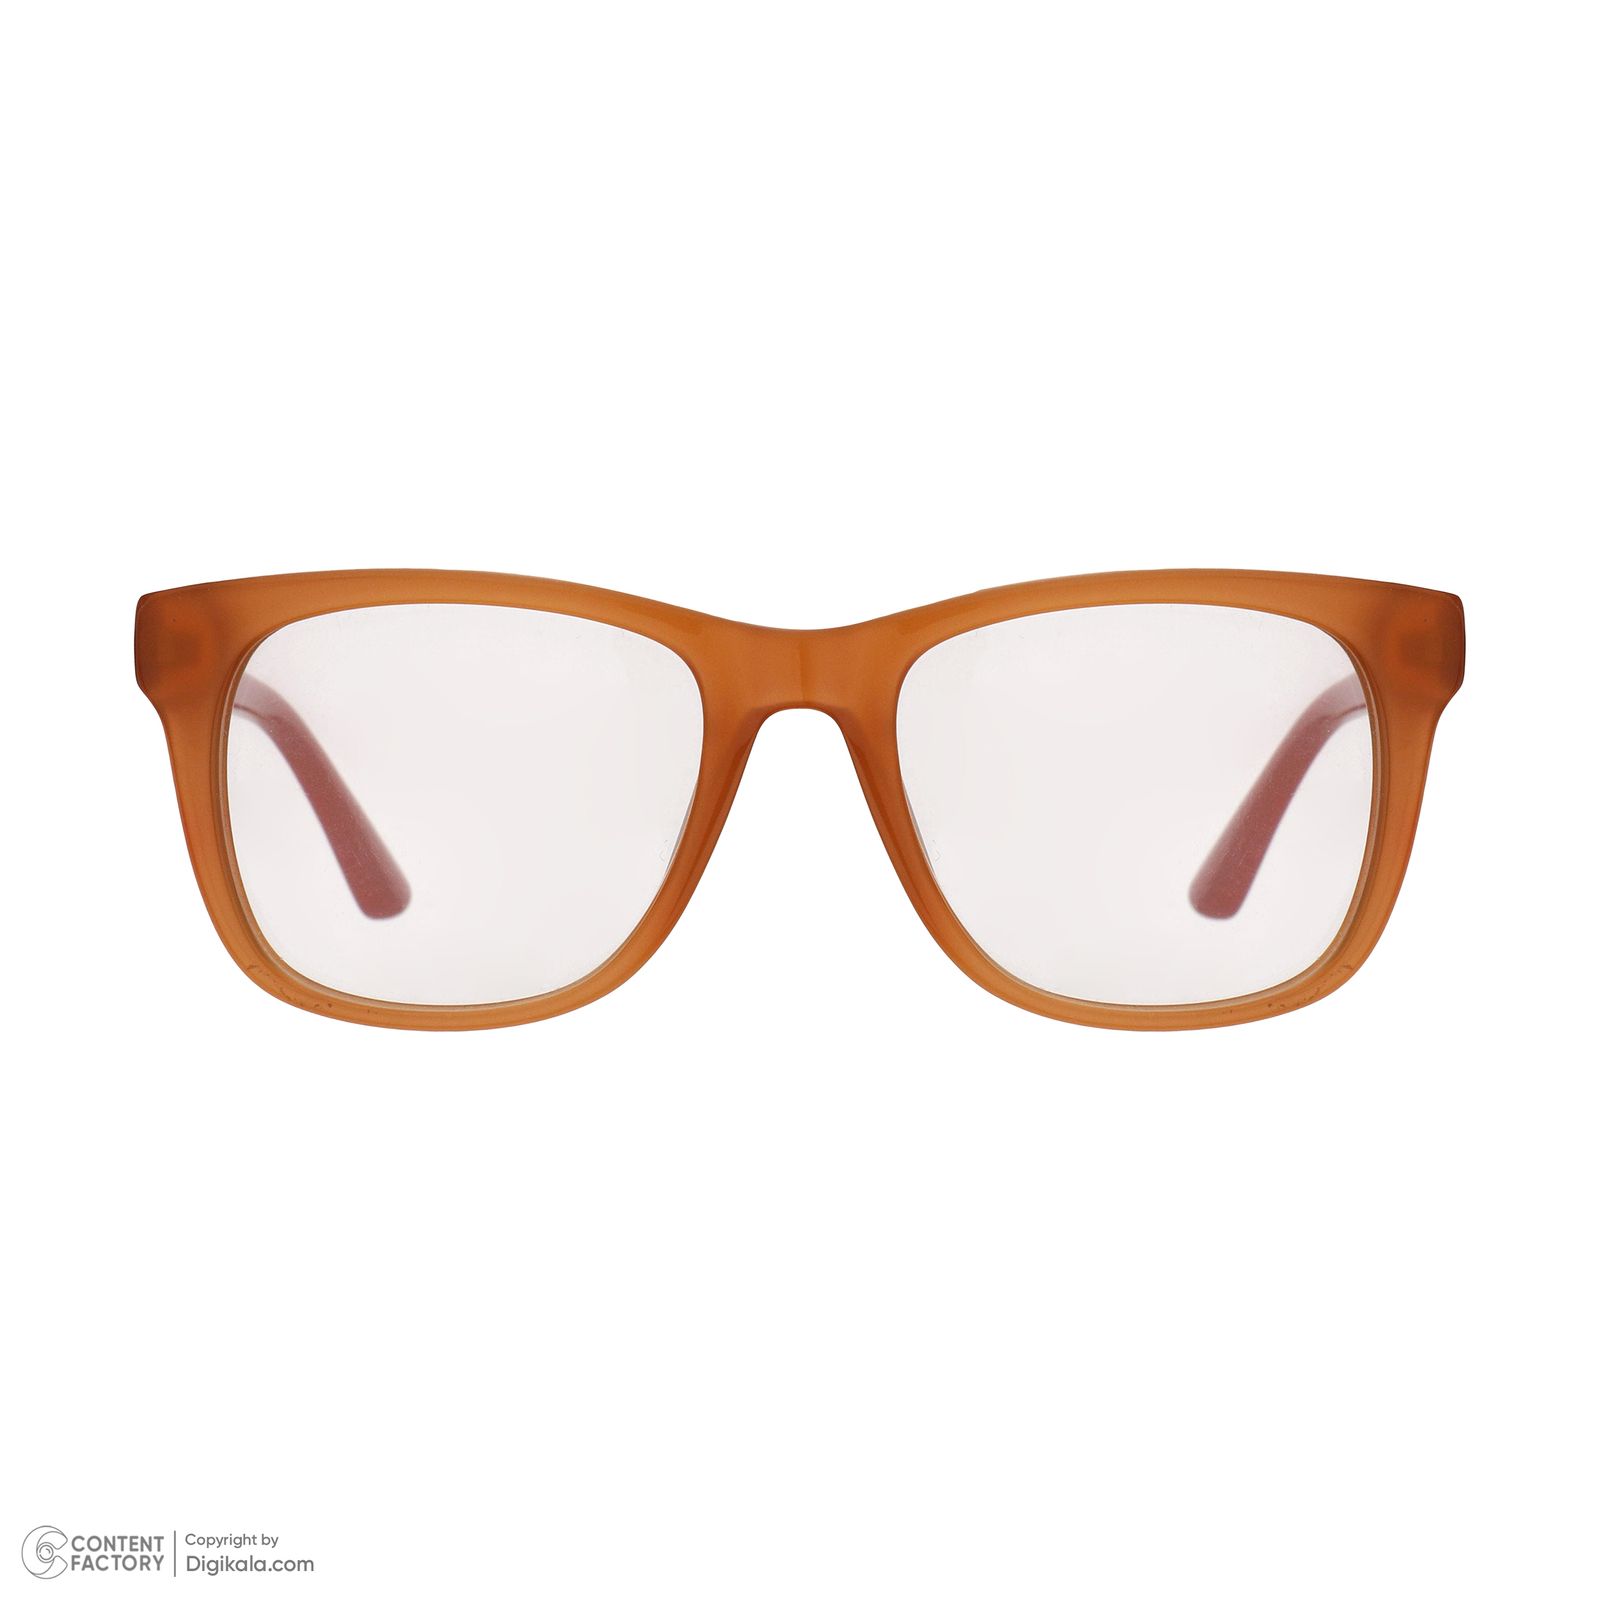 فریم عینک طبی زنانه لاگوست مدل 3614-800 -  - 3